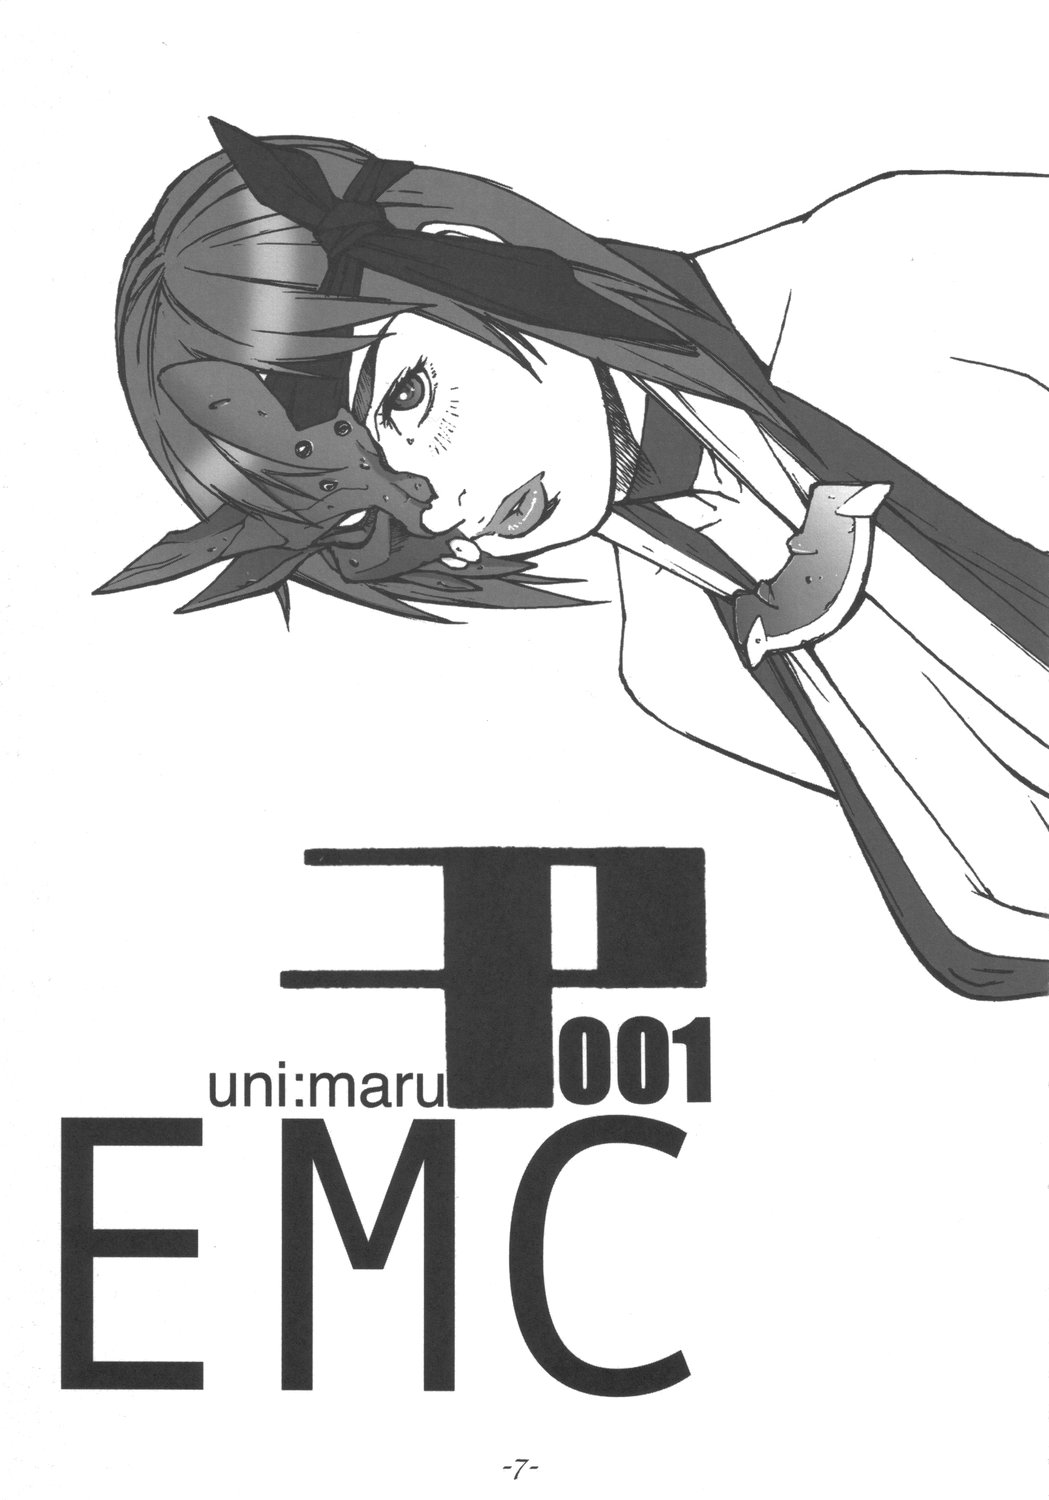 Uni：Maru EMC